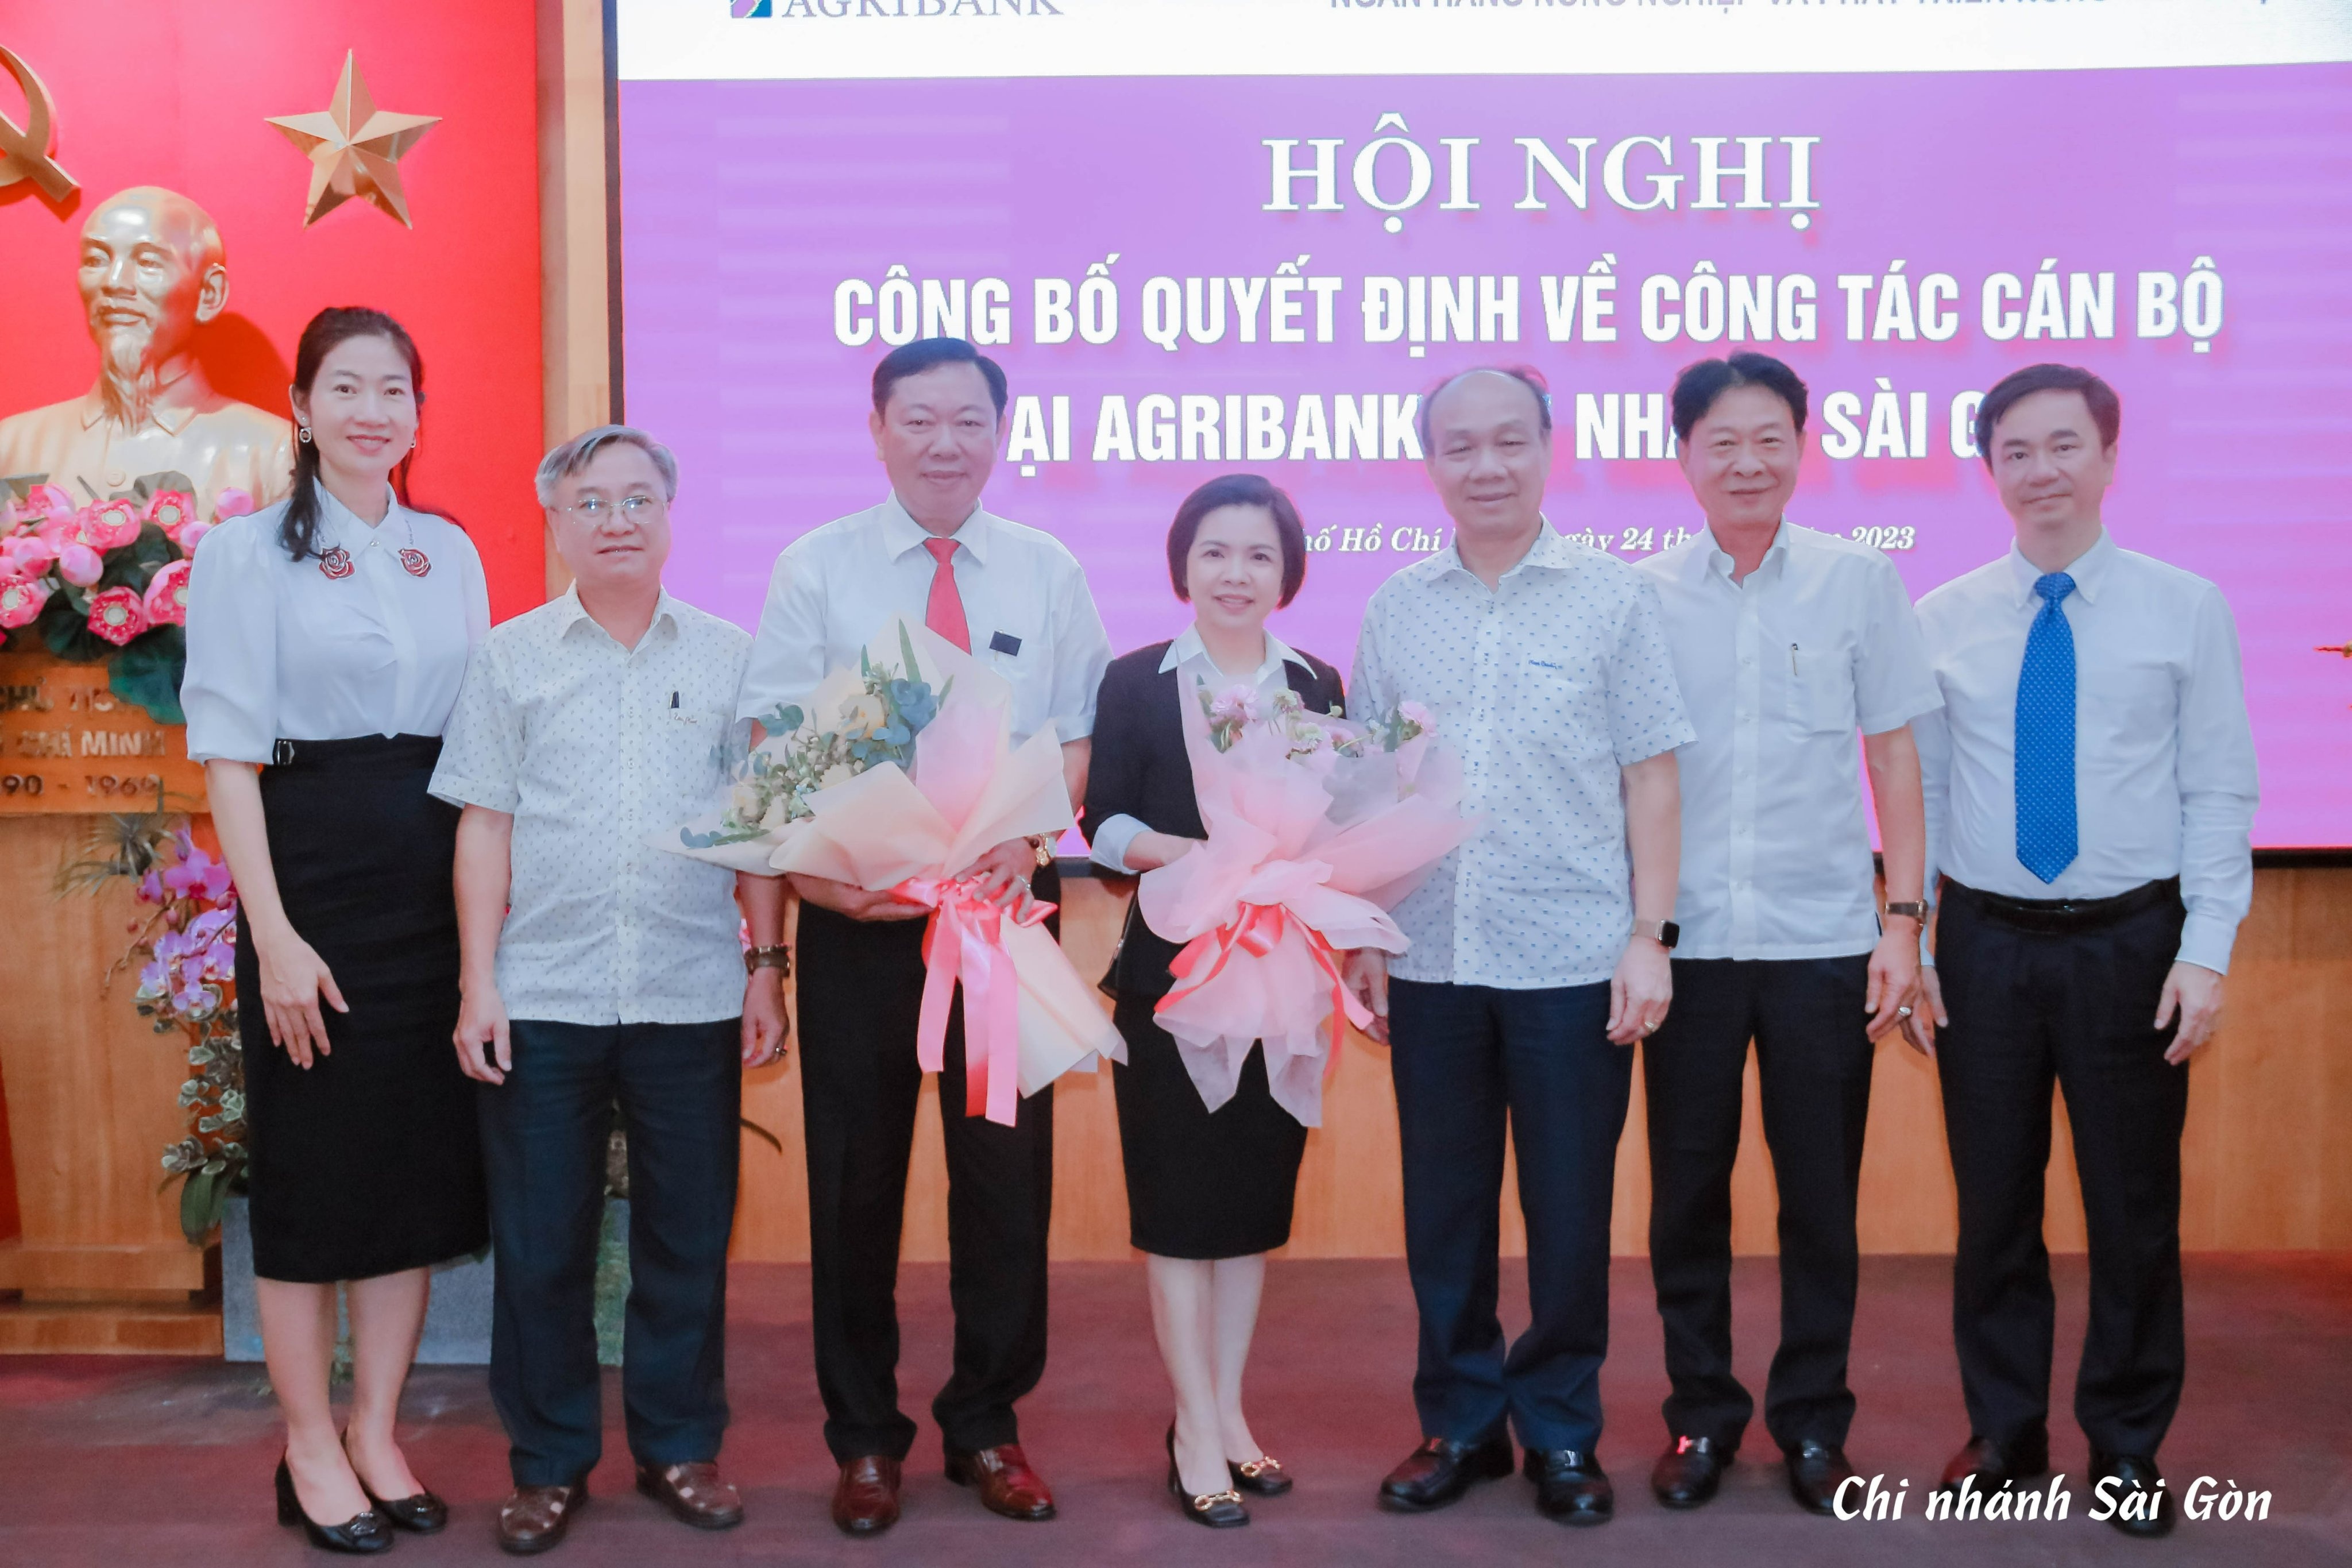 Agribank chi nhánh Sài Gòn công bố quyết định công tác cán bộ